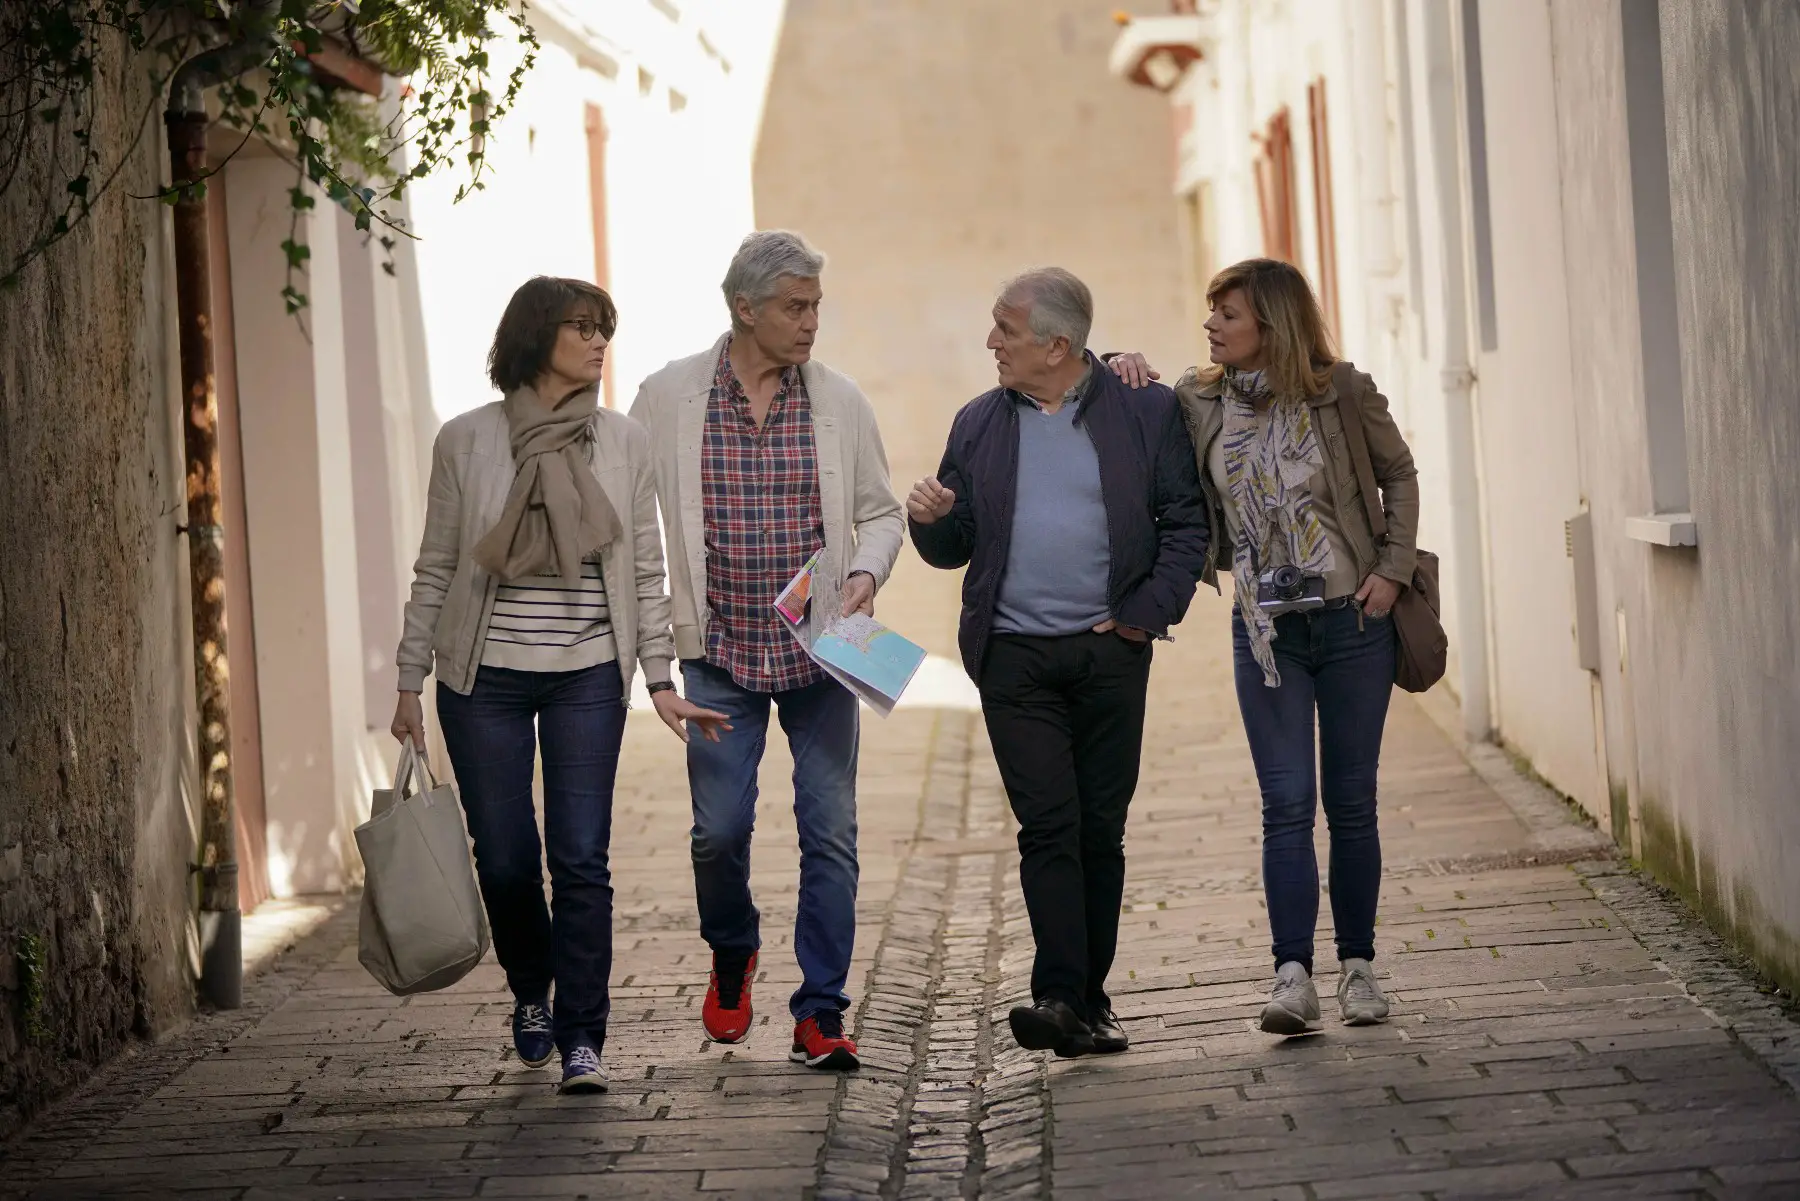 Seniors walking in France